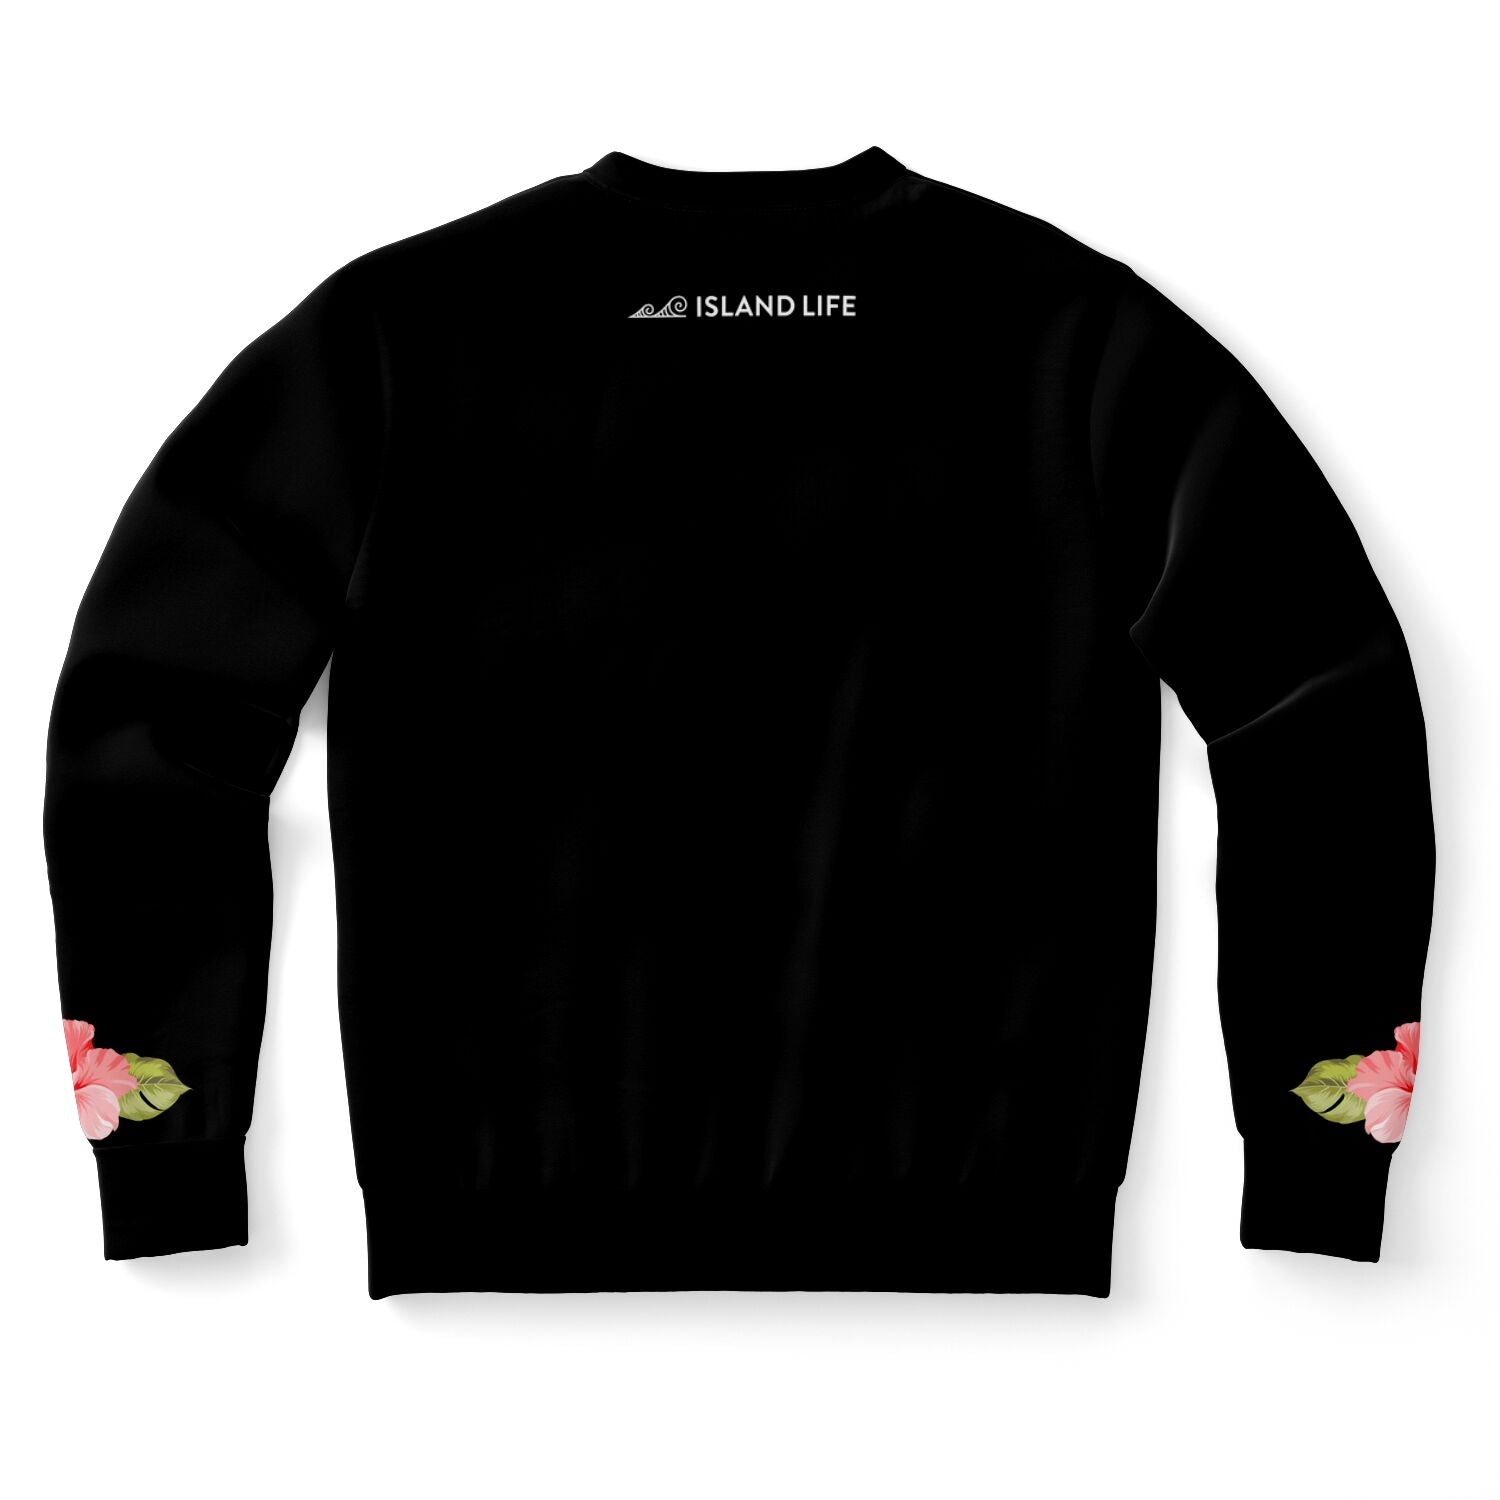 Hibiscus Lei Guam Sweatshirt